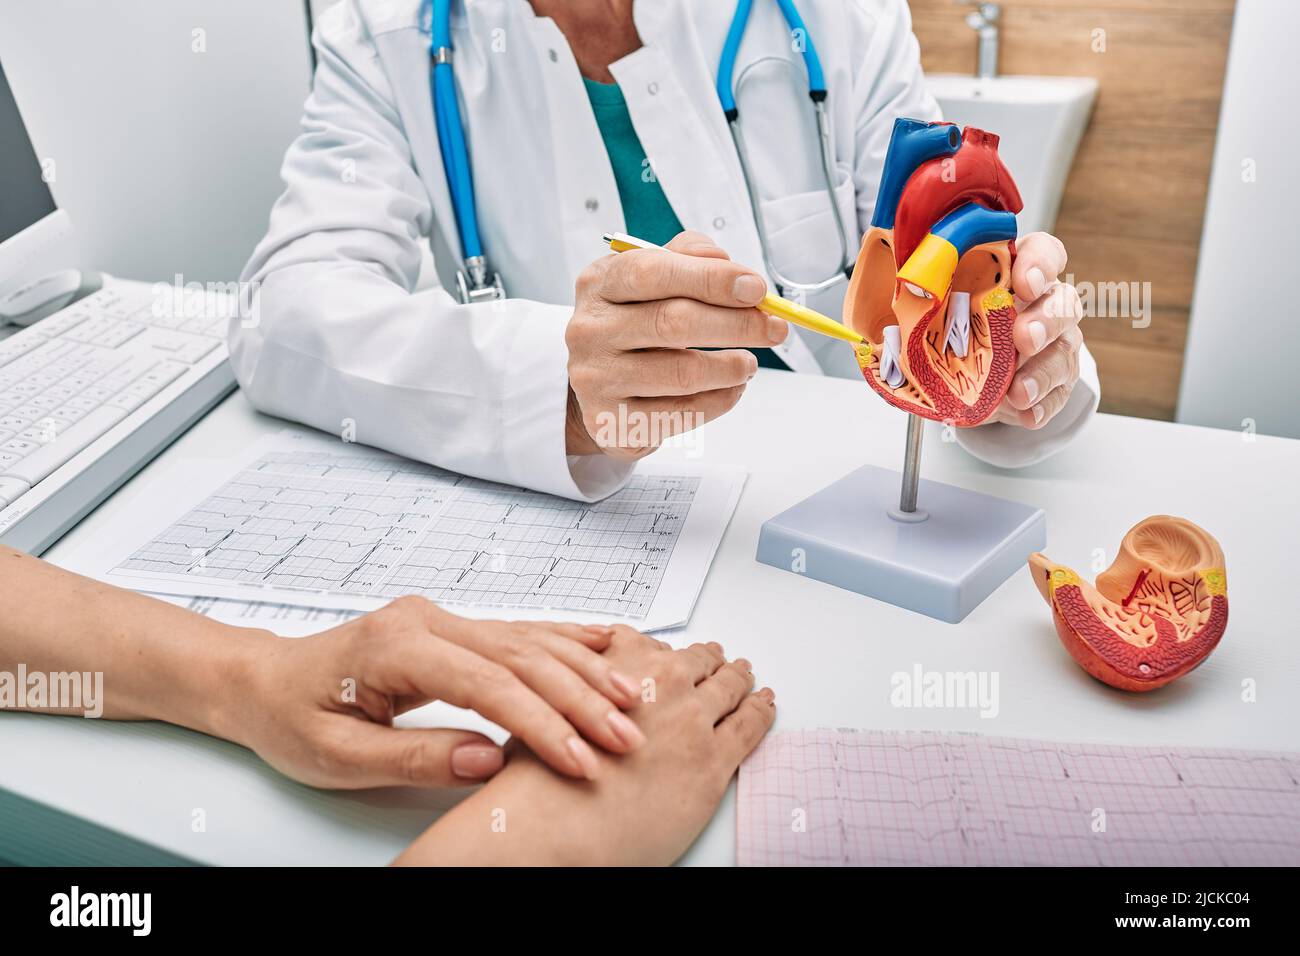 Consulta cardiológica, tratamiento de cardiopatía. Doctor cardiólogo mientras consulta mostrando modelo anatómico del corazón humano Foto de stock